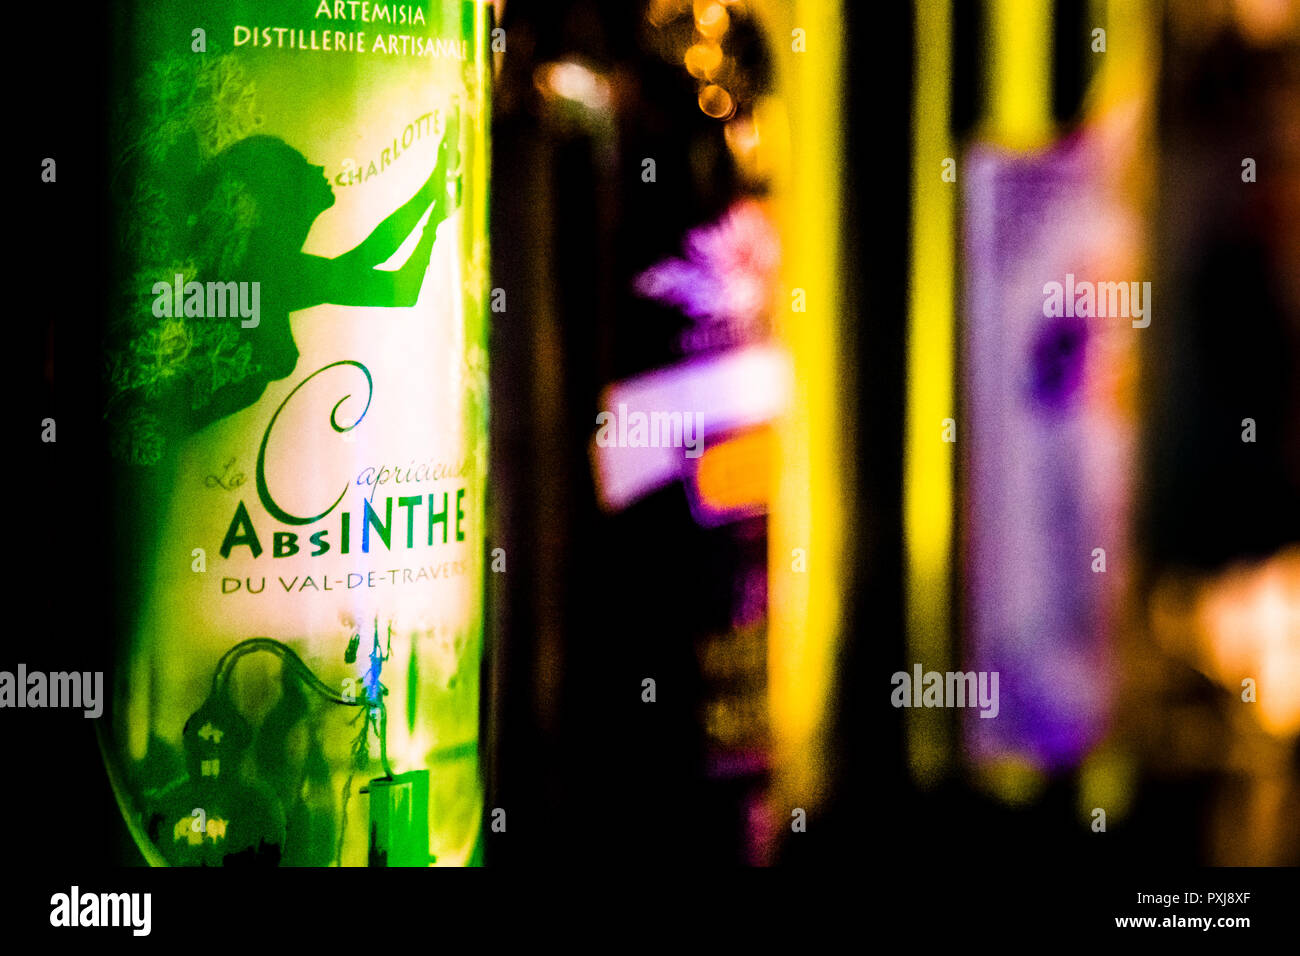 Absinth in Frankreich und der Schweiz. Die grüne Fee - La fée verte - Absinthe war das erste alkoholische Getränk, das Frauen Mitte des 19. Jahrhunderts in der Öffentlichkeit trinken durften, ohne zu den unrühmlichen Demimonden gezählt zu werden Stockfoto